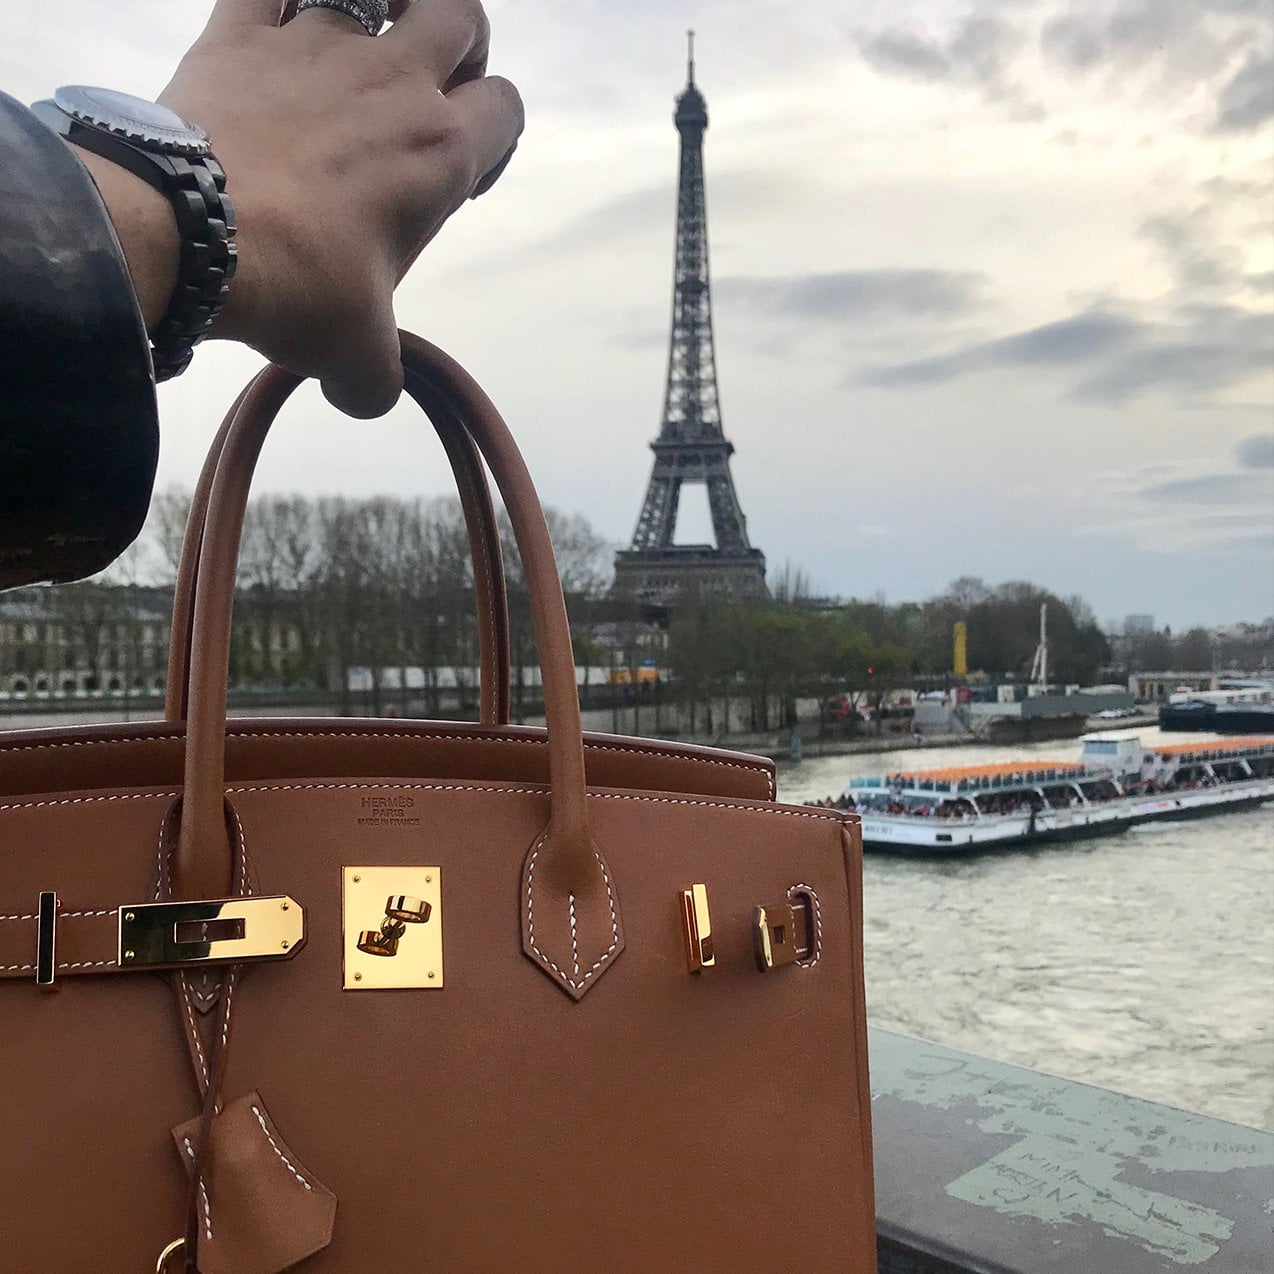 Hermès Birkin Prices 2019: USA vs. Europe